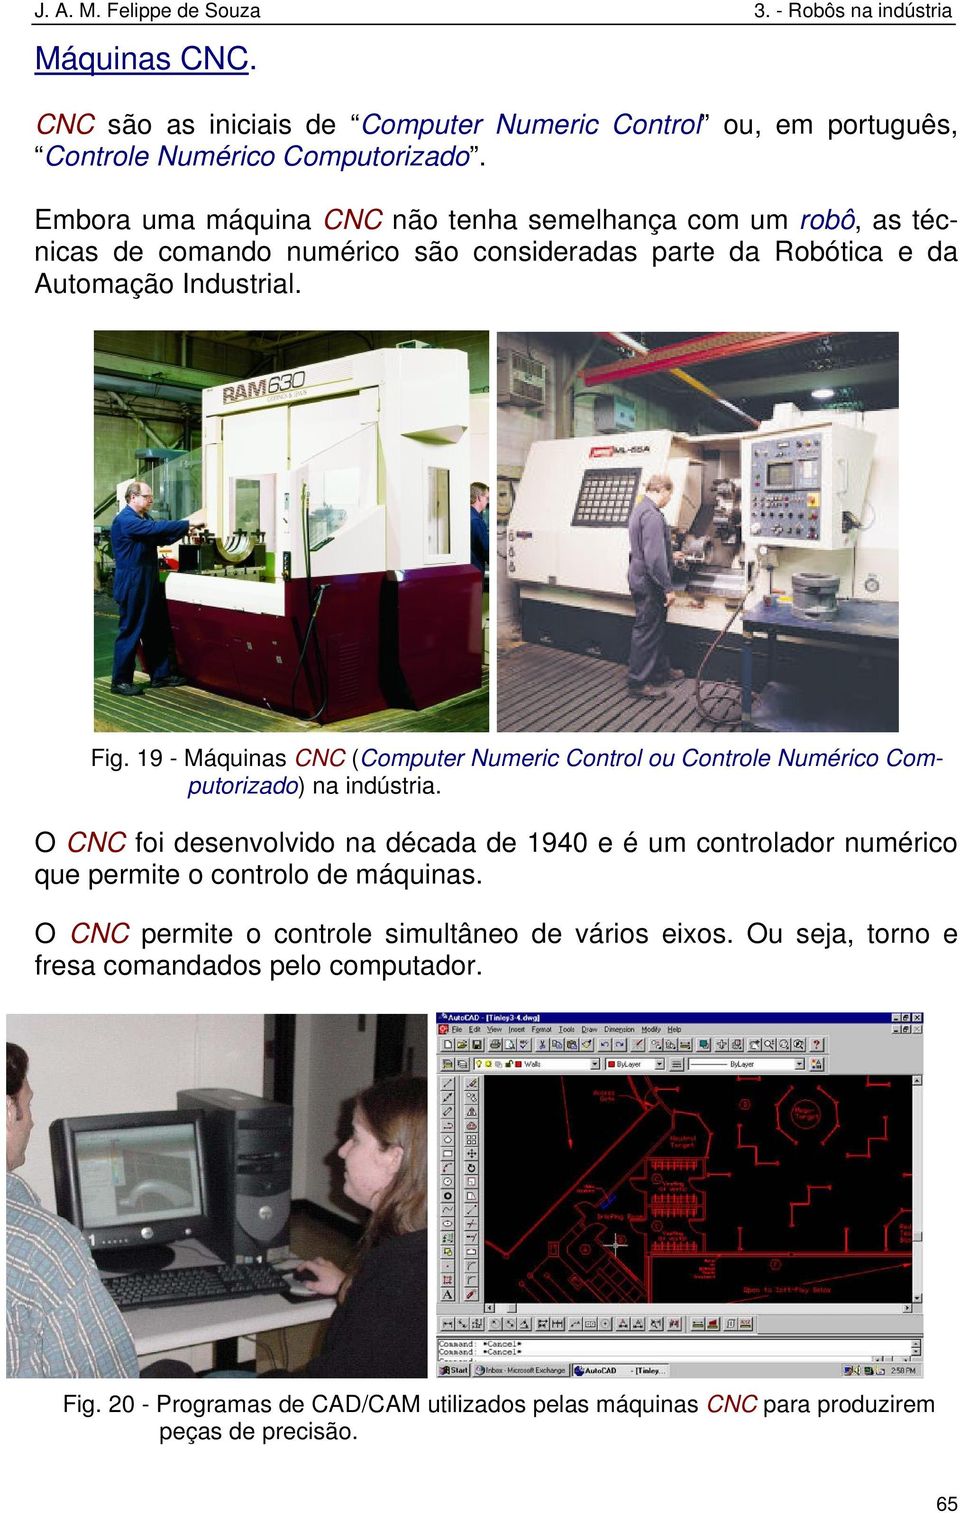 19 - Máquinas CNC (Computer Numeric Control ou Controle Numérico Computorizado) na indústria.